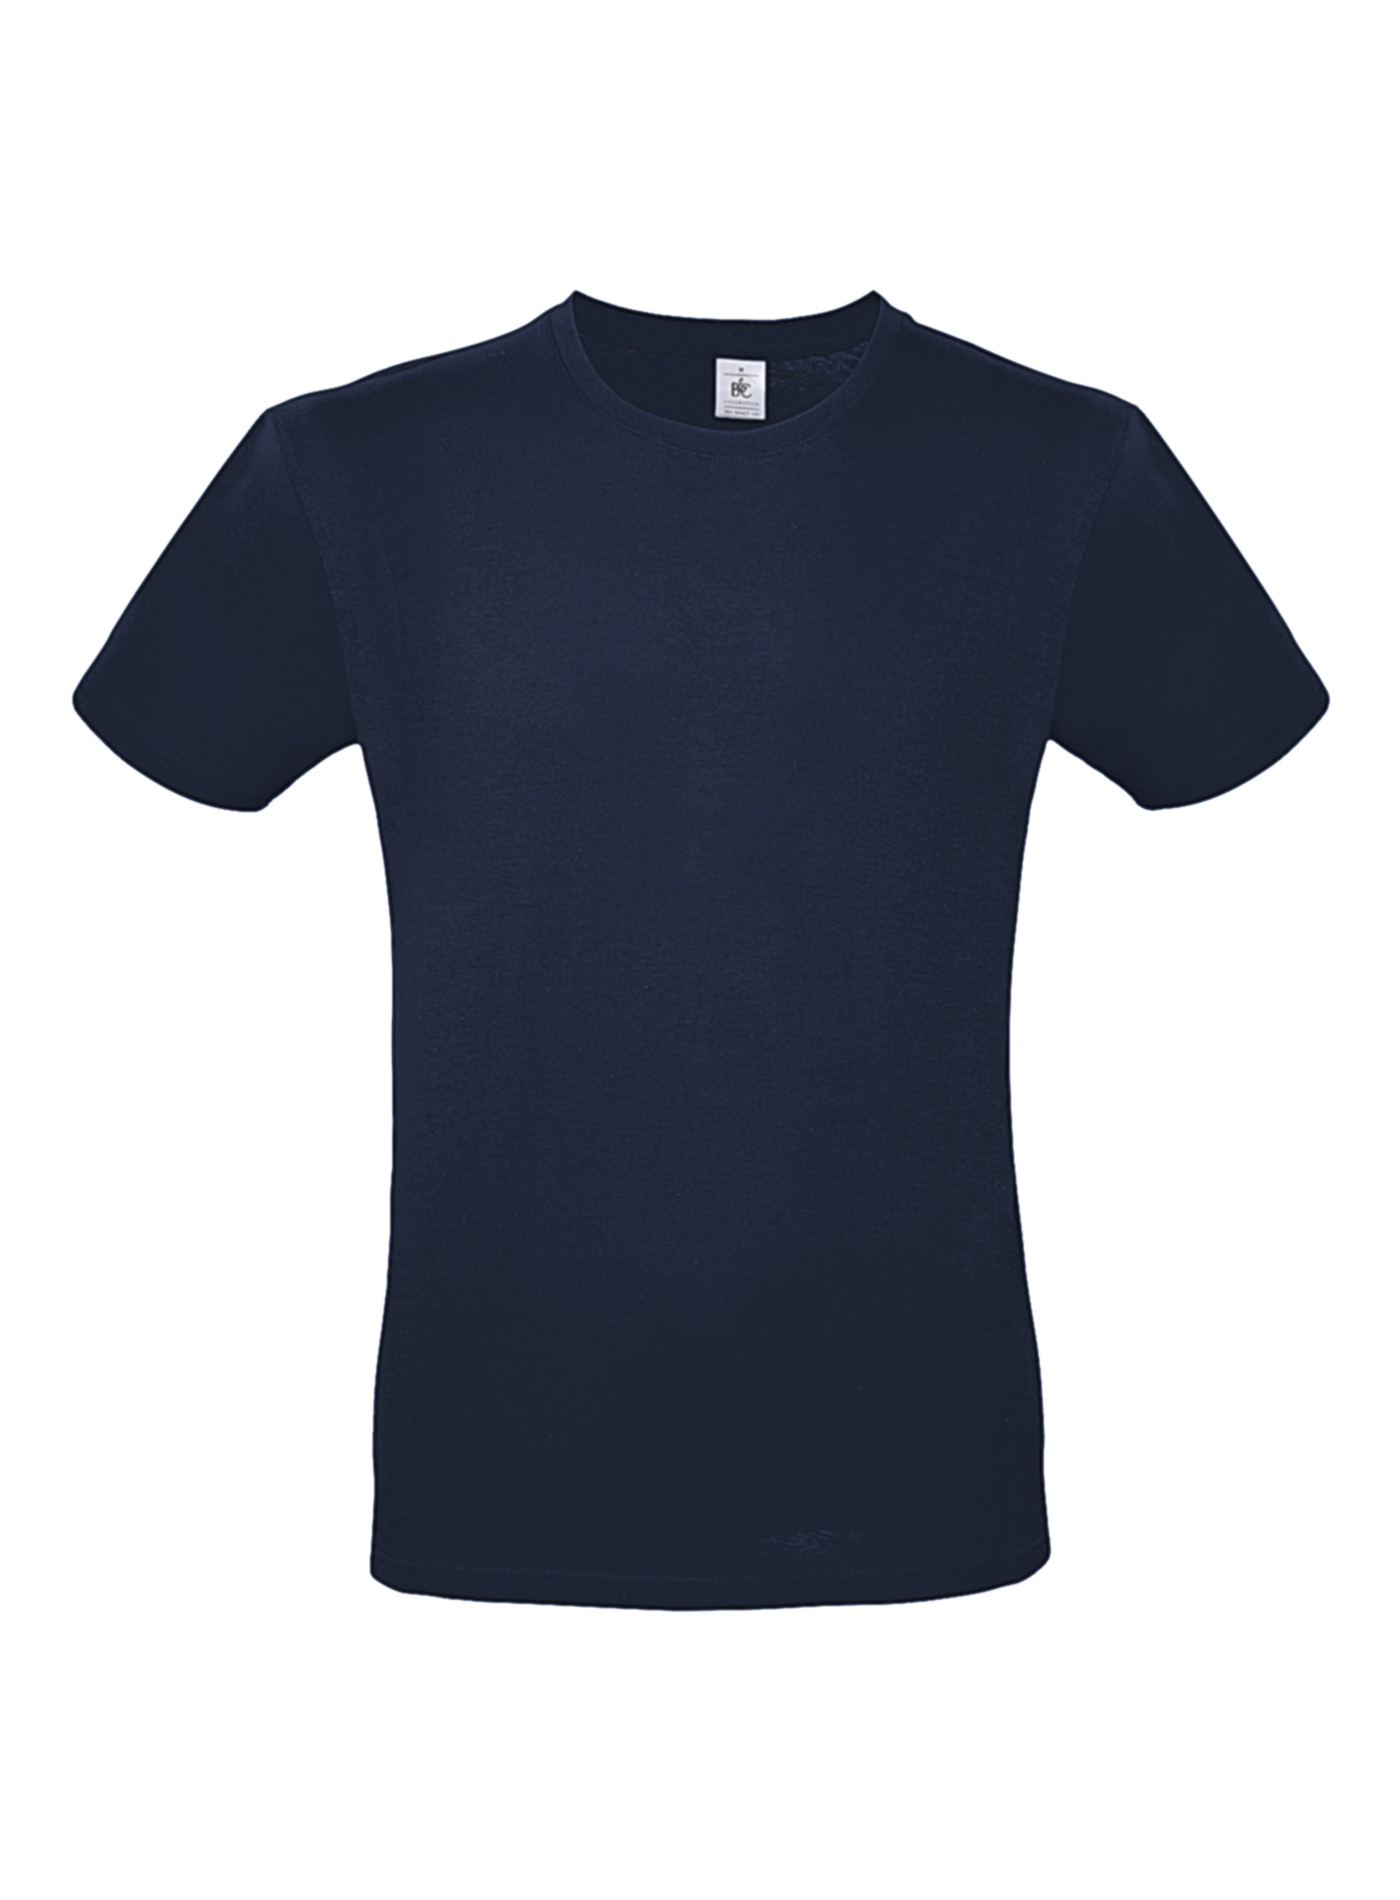 Pánské tričko B&C - Námořní modrá 3XL